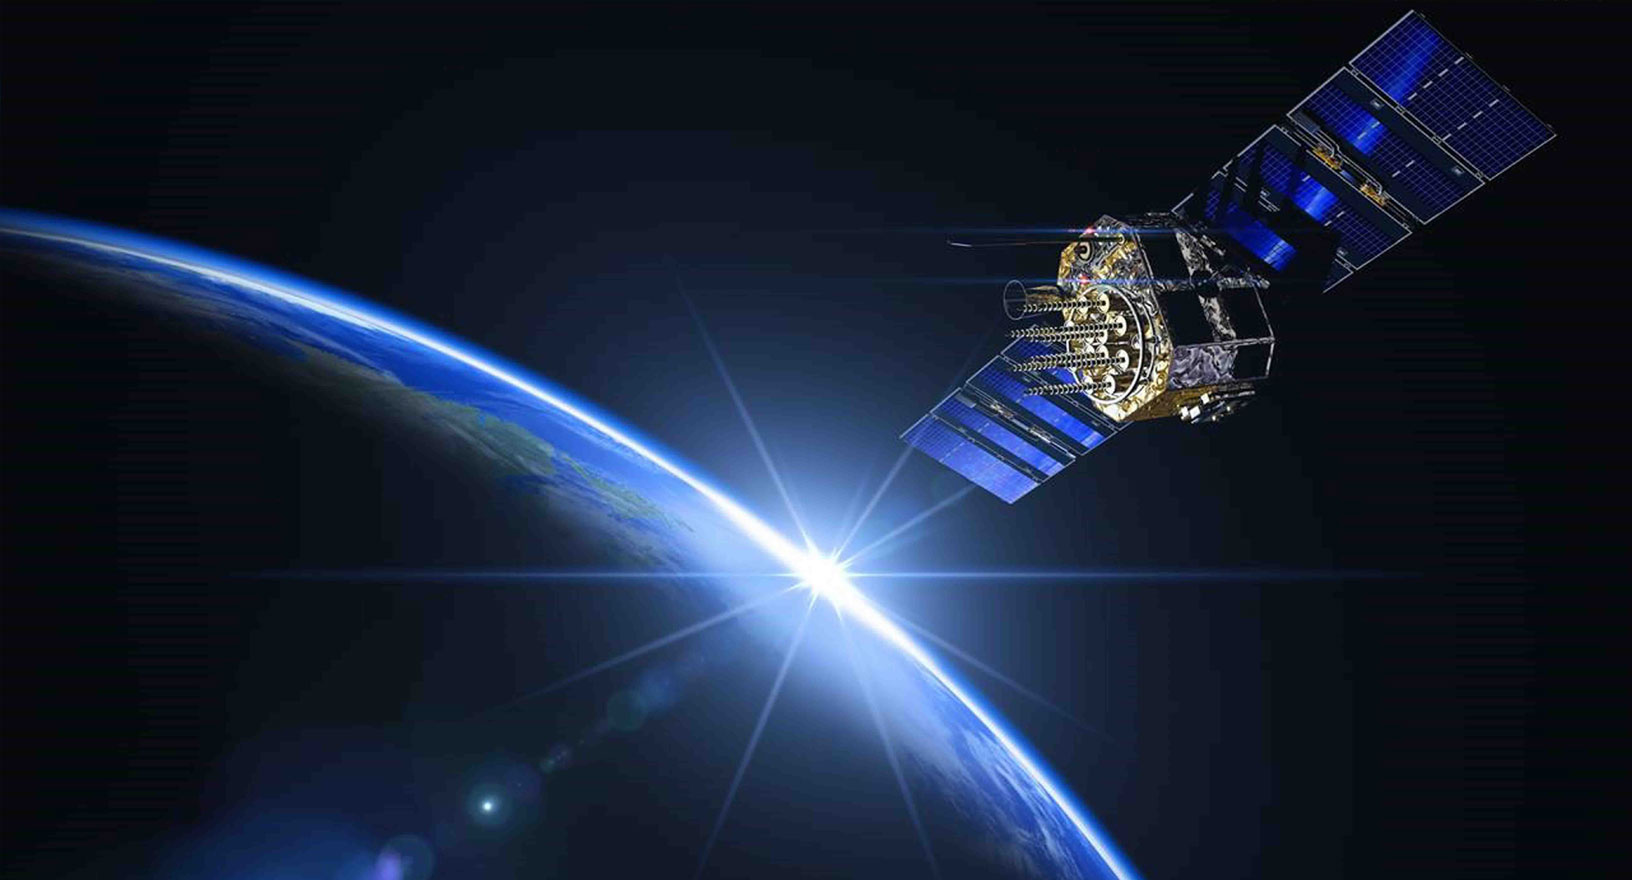 Un satellite del Global Navigation Satellite System in orbita intorno alla Terra nello spazio.